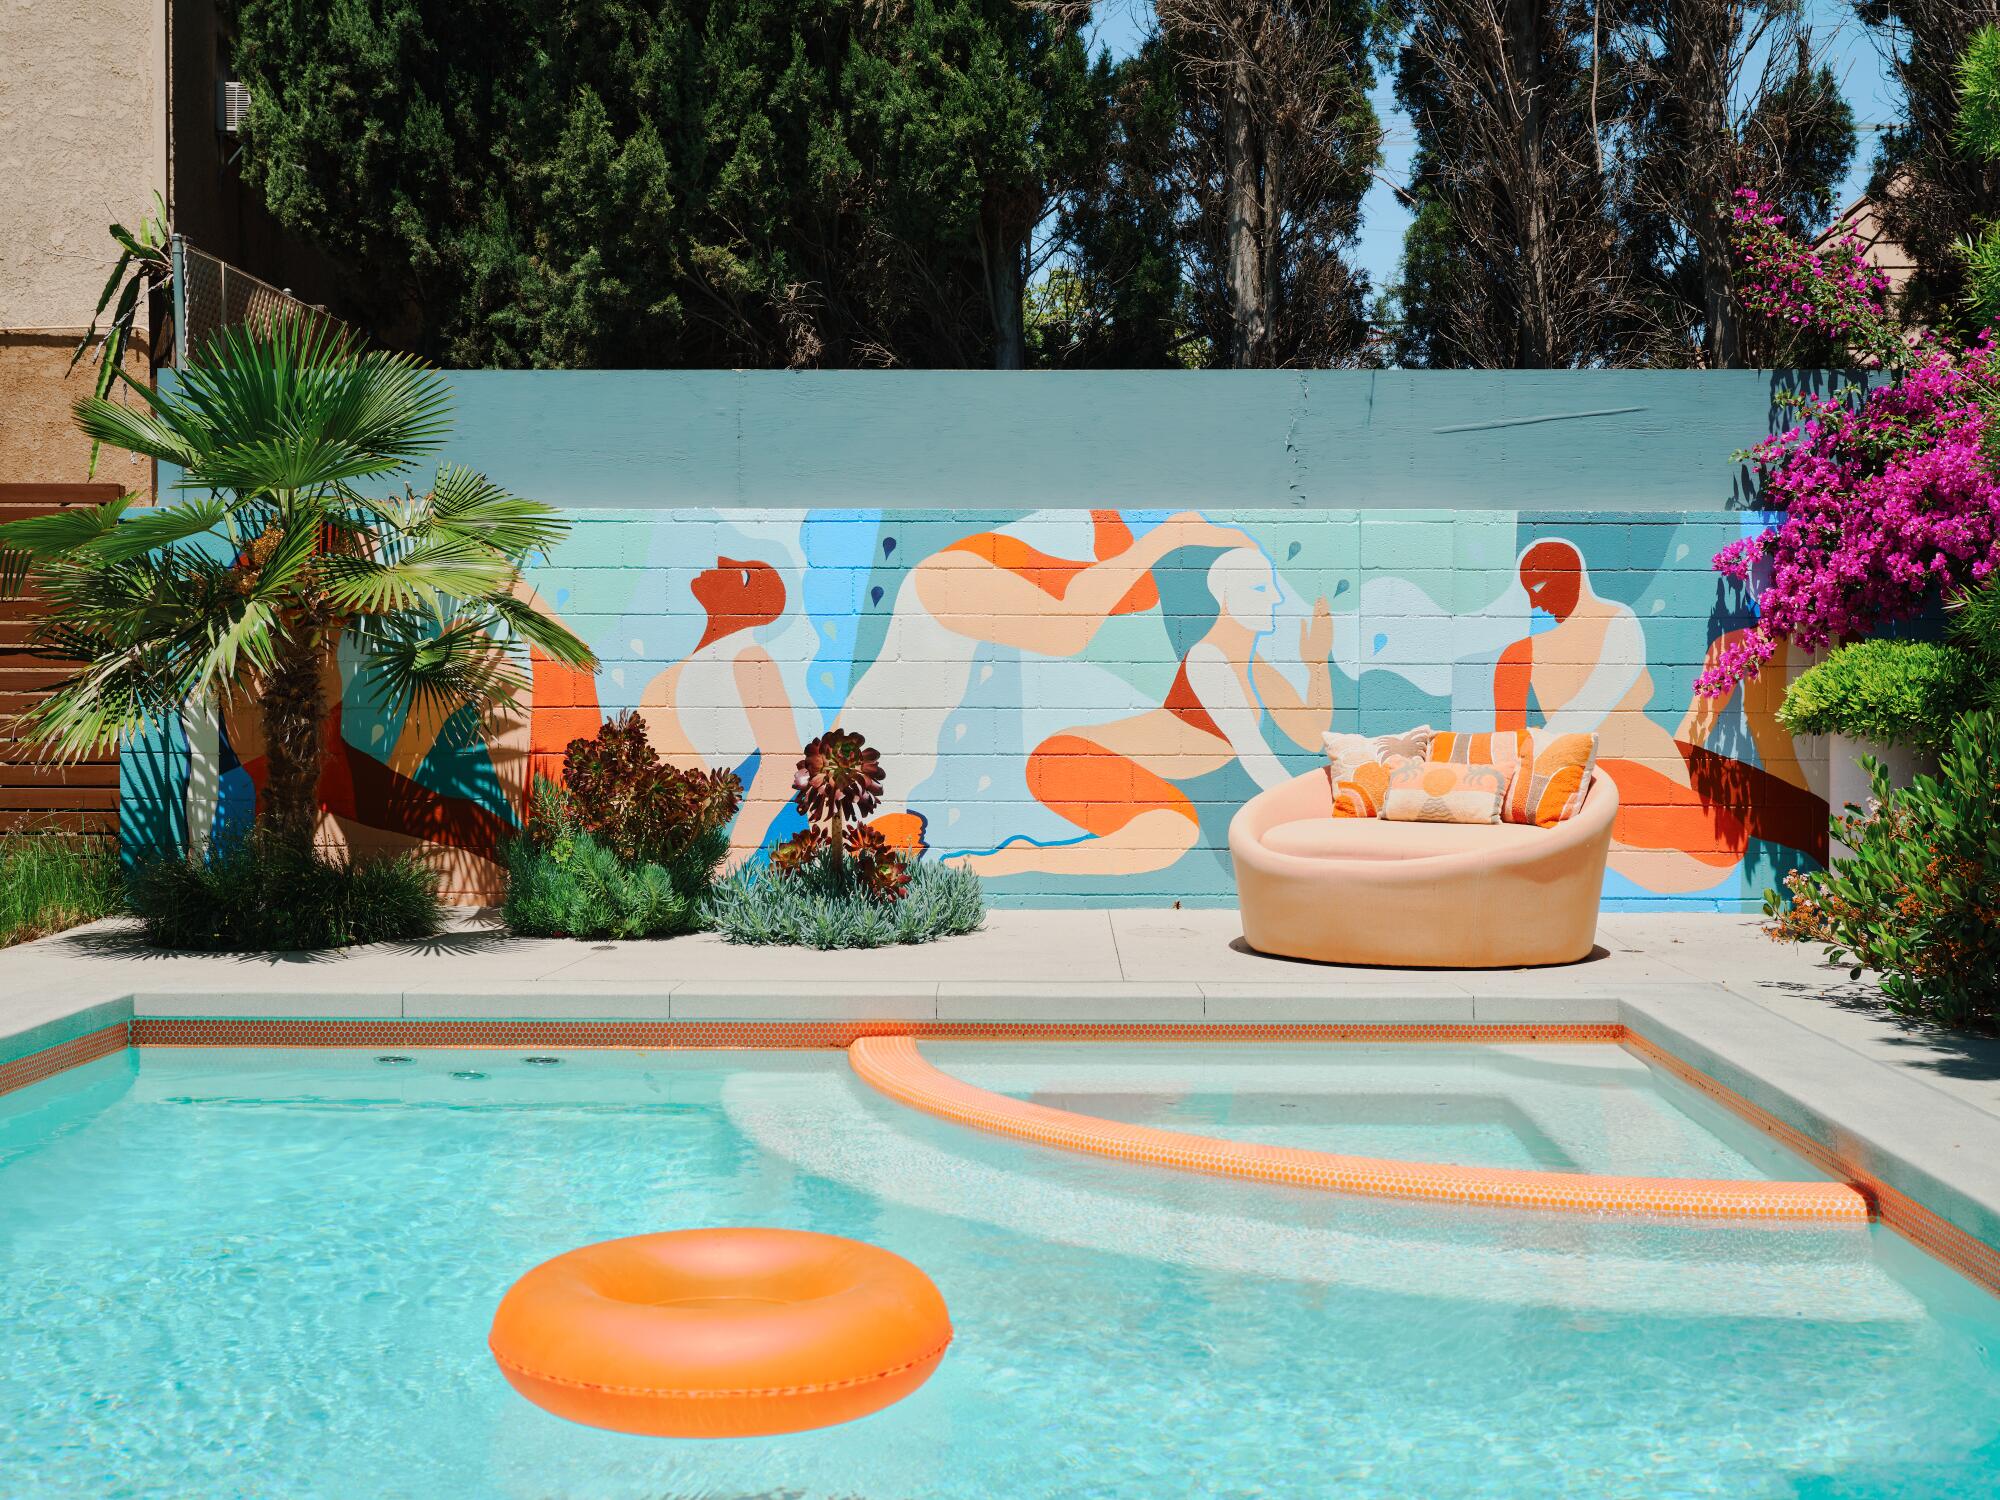 Un anillo de respiración naranja flota en la piscina junto a una pared que resalta a los nadadores vestidos de naranja.